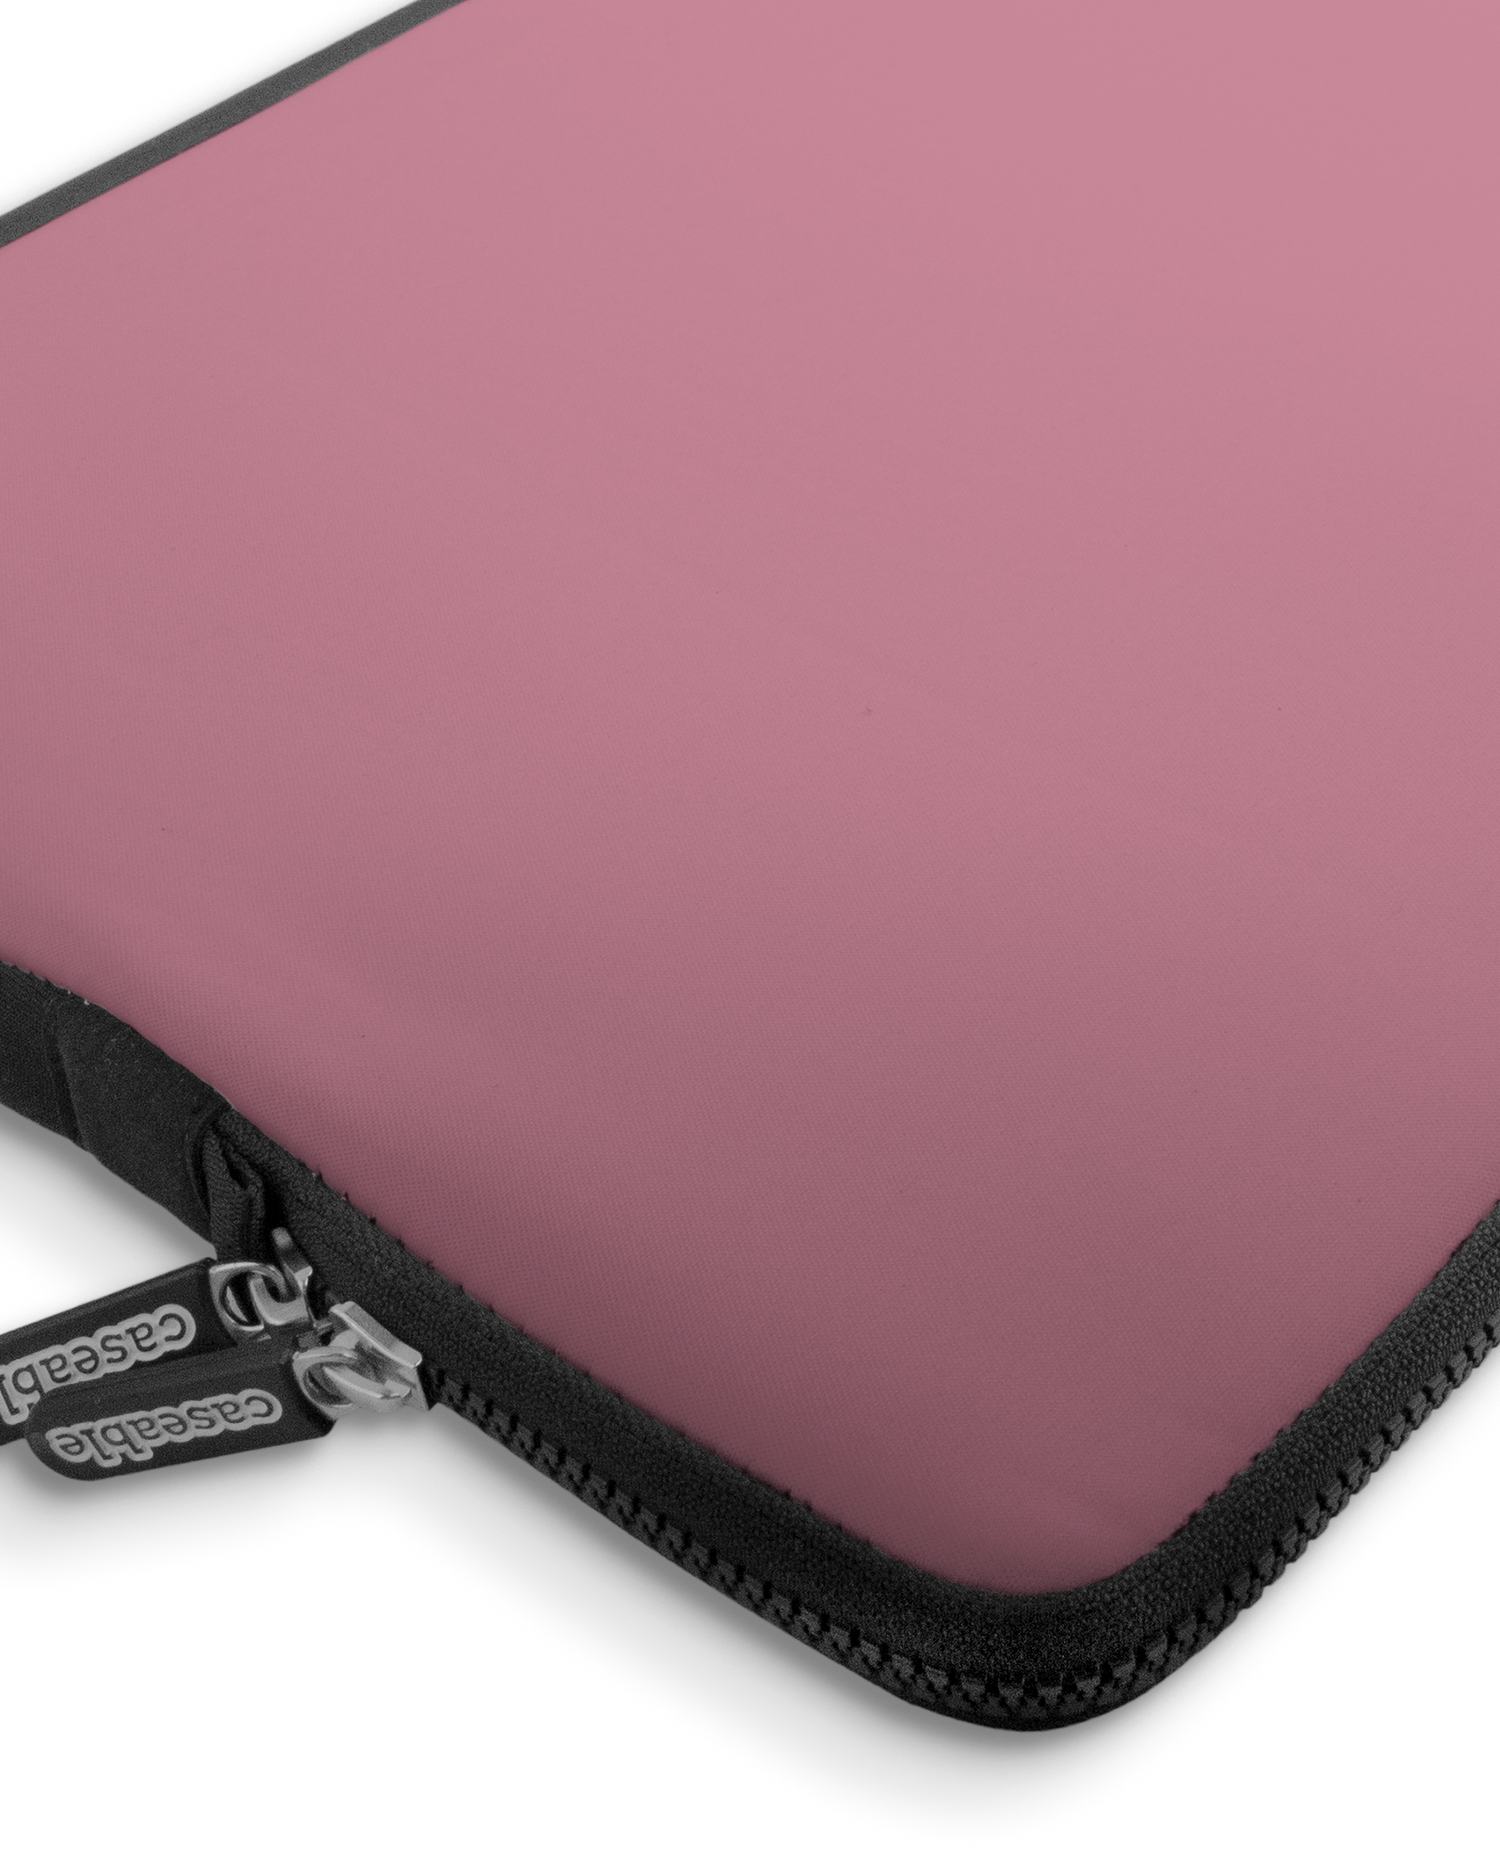 WILD ROSE Premium Laptoptasche 17 Zoll mit Gerät im Inneren